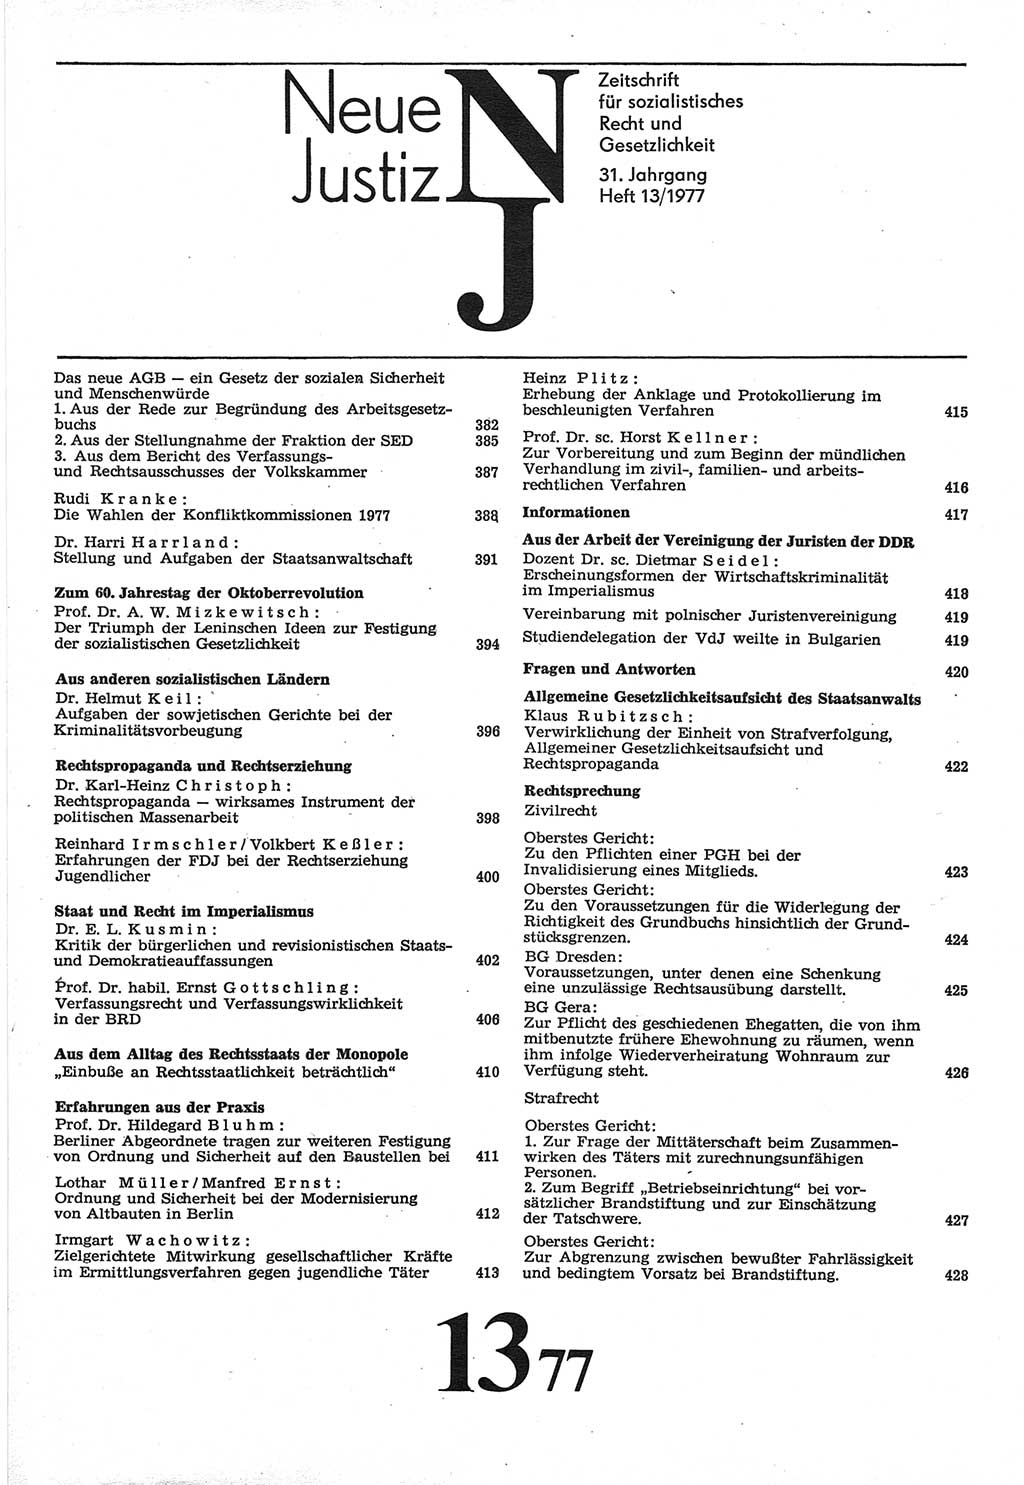 Neue Justiz (NJ), Zeitschrift für Recht und Rechtswissenschaft-Zeitschrift, sozialistisches Recht und Gesetzlichkeit, 31. Jahrgang 1977, Seite 381 (NJ DDR 1977, S. 381)